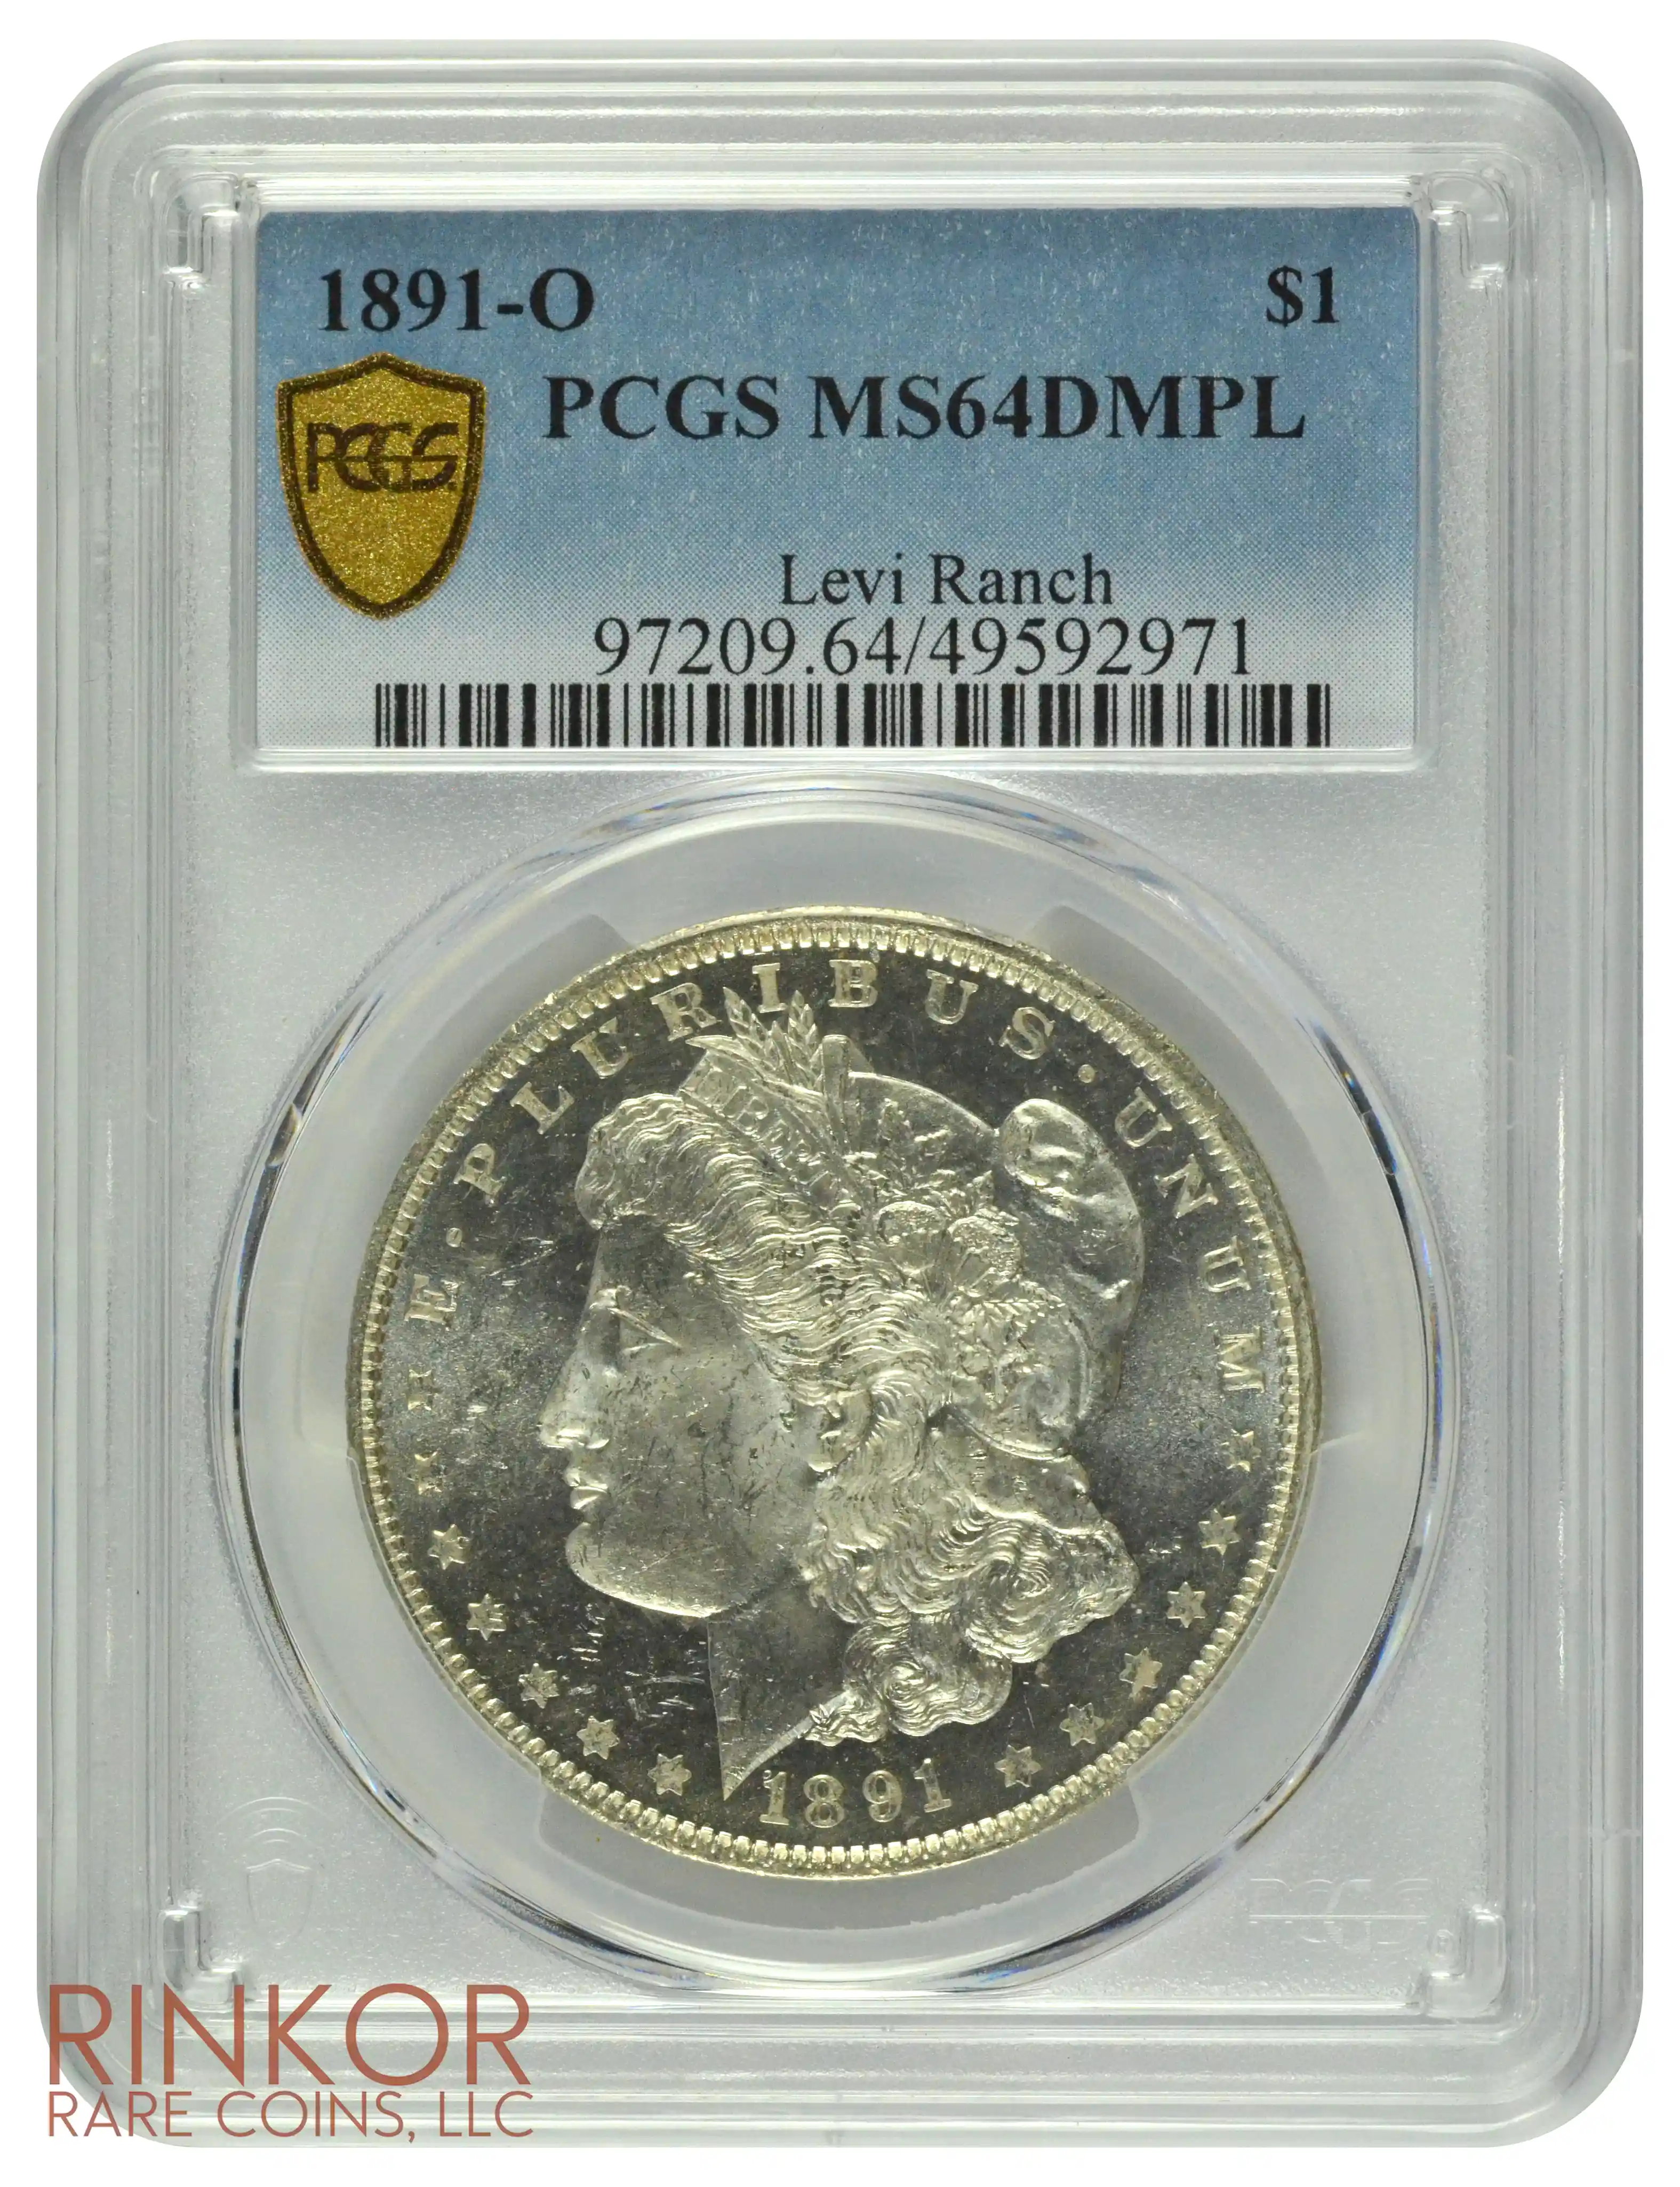 1891-O $1 PCGS MS 64 DMPL 